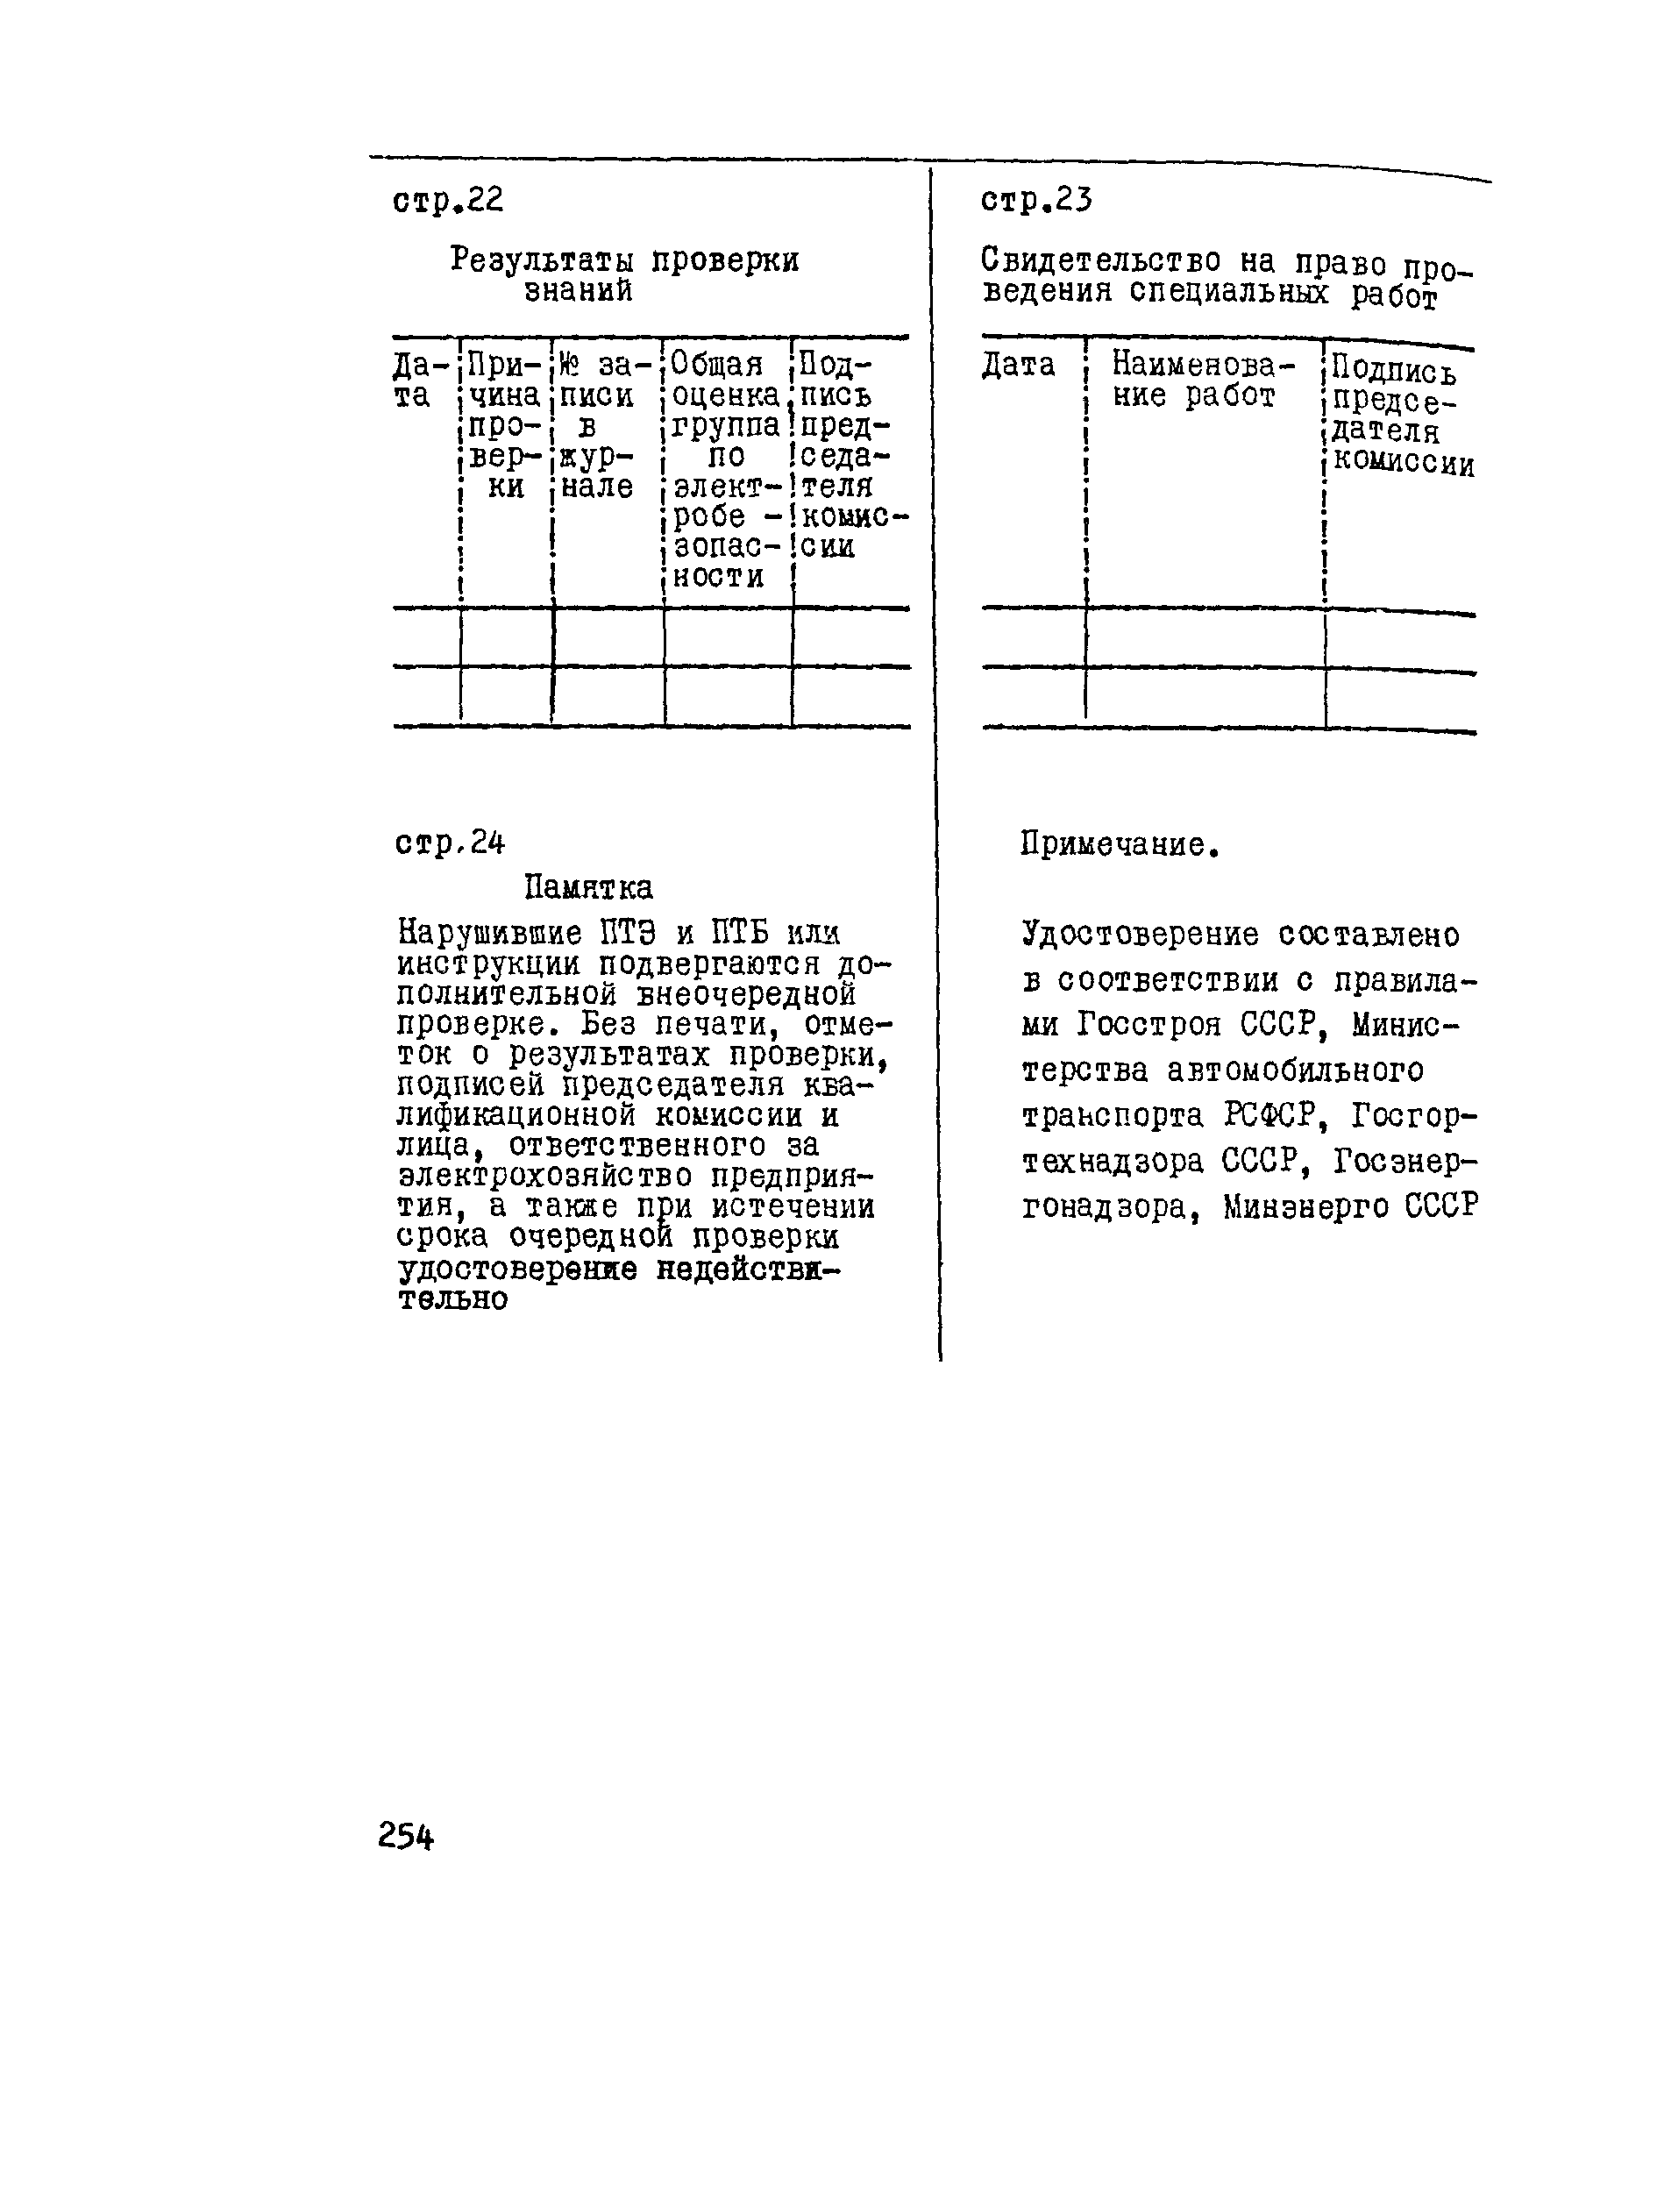 РД 102-011-89